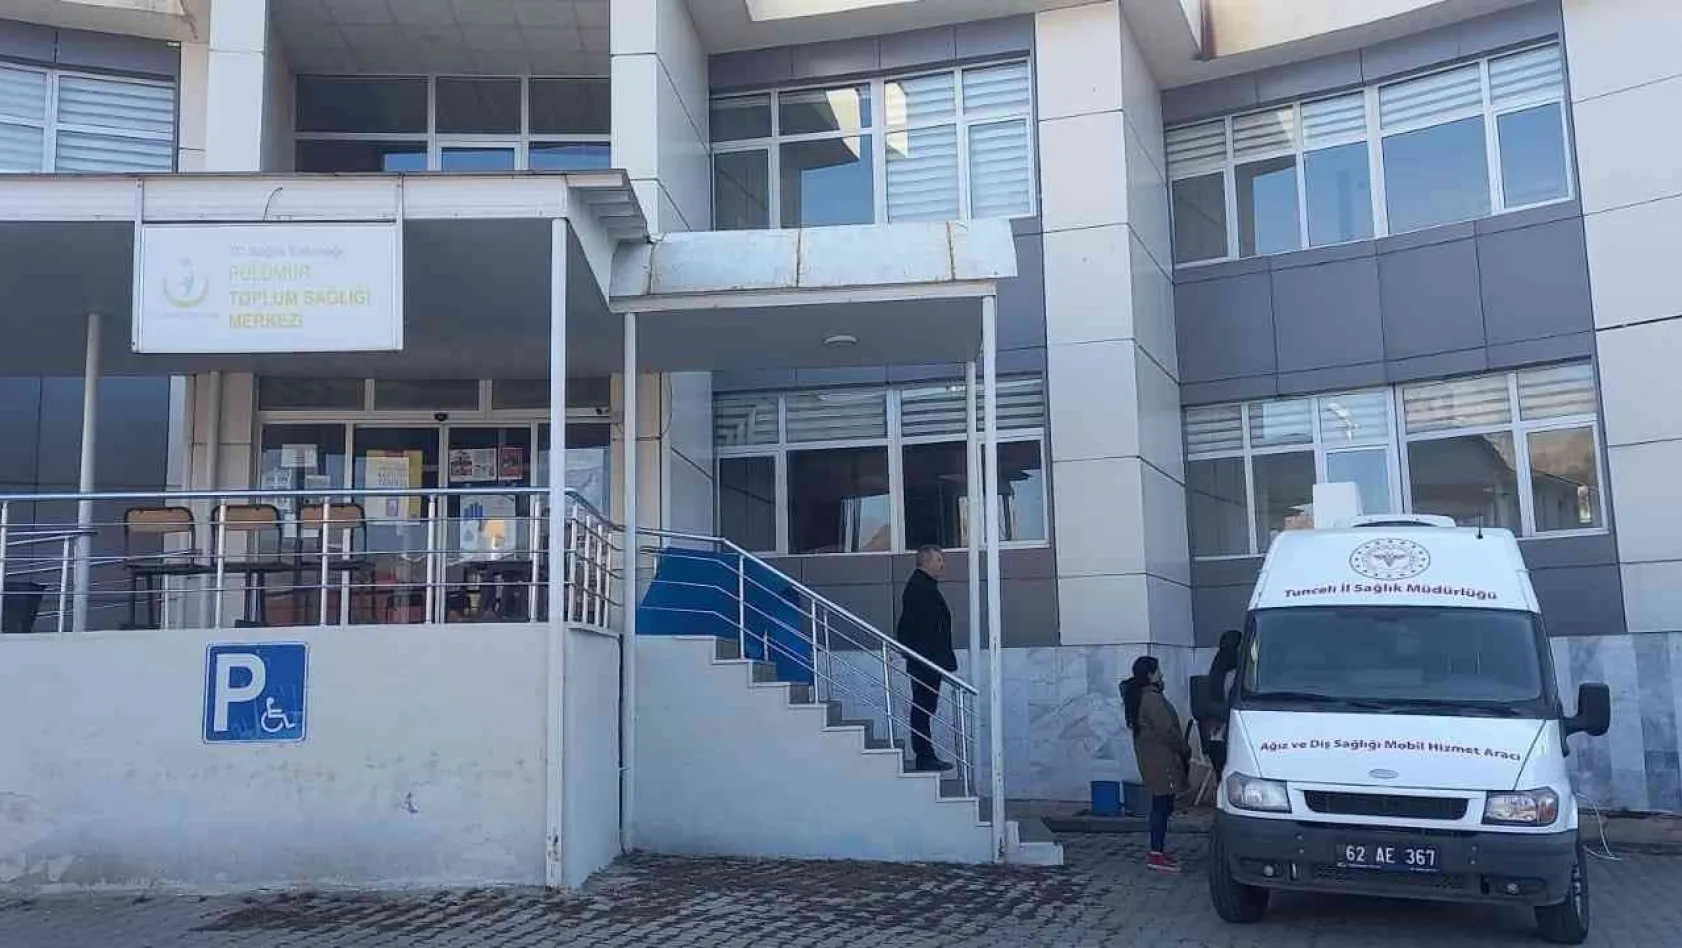 Tunceli'de mobil hizmet aracı hizmete başladı